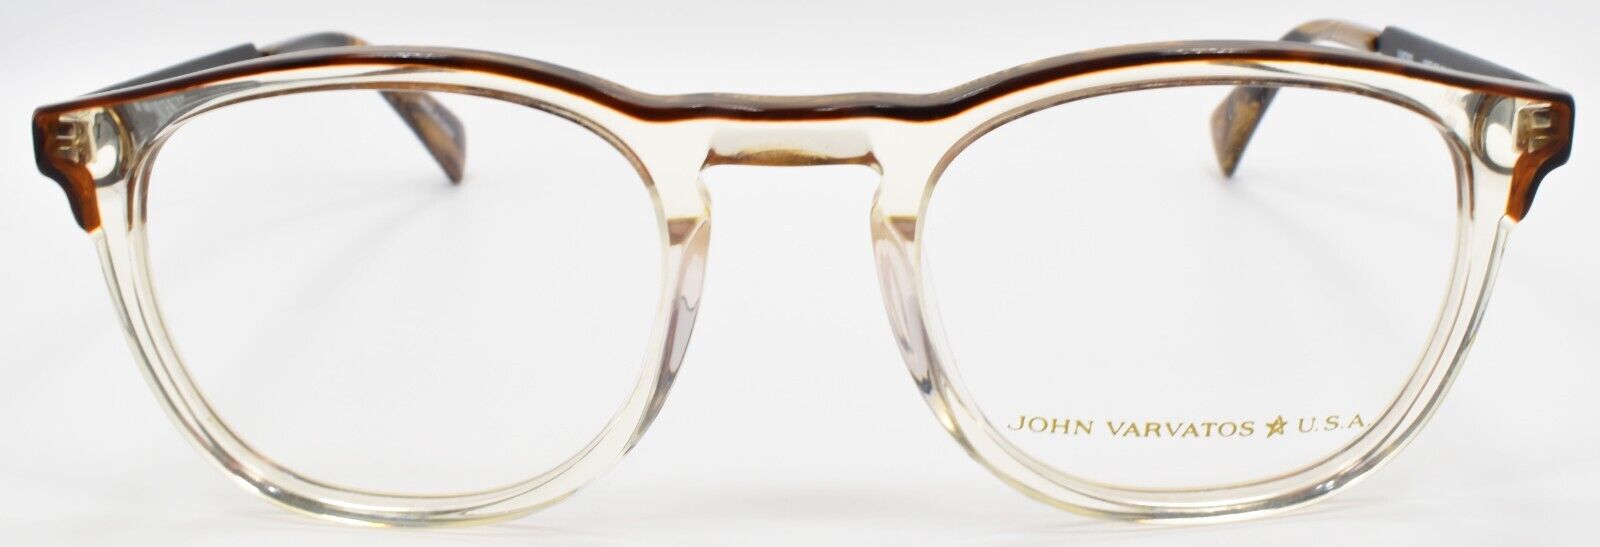 2-John Varvatos VJVC002 Men's Eyeglasses Frames 49-21-145 Vintage Crystal-751286356113-IKSpecs